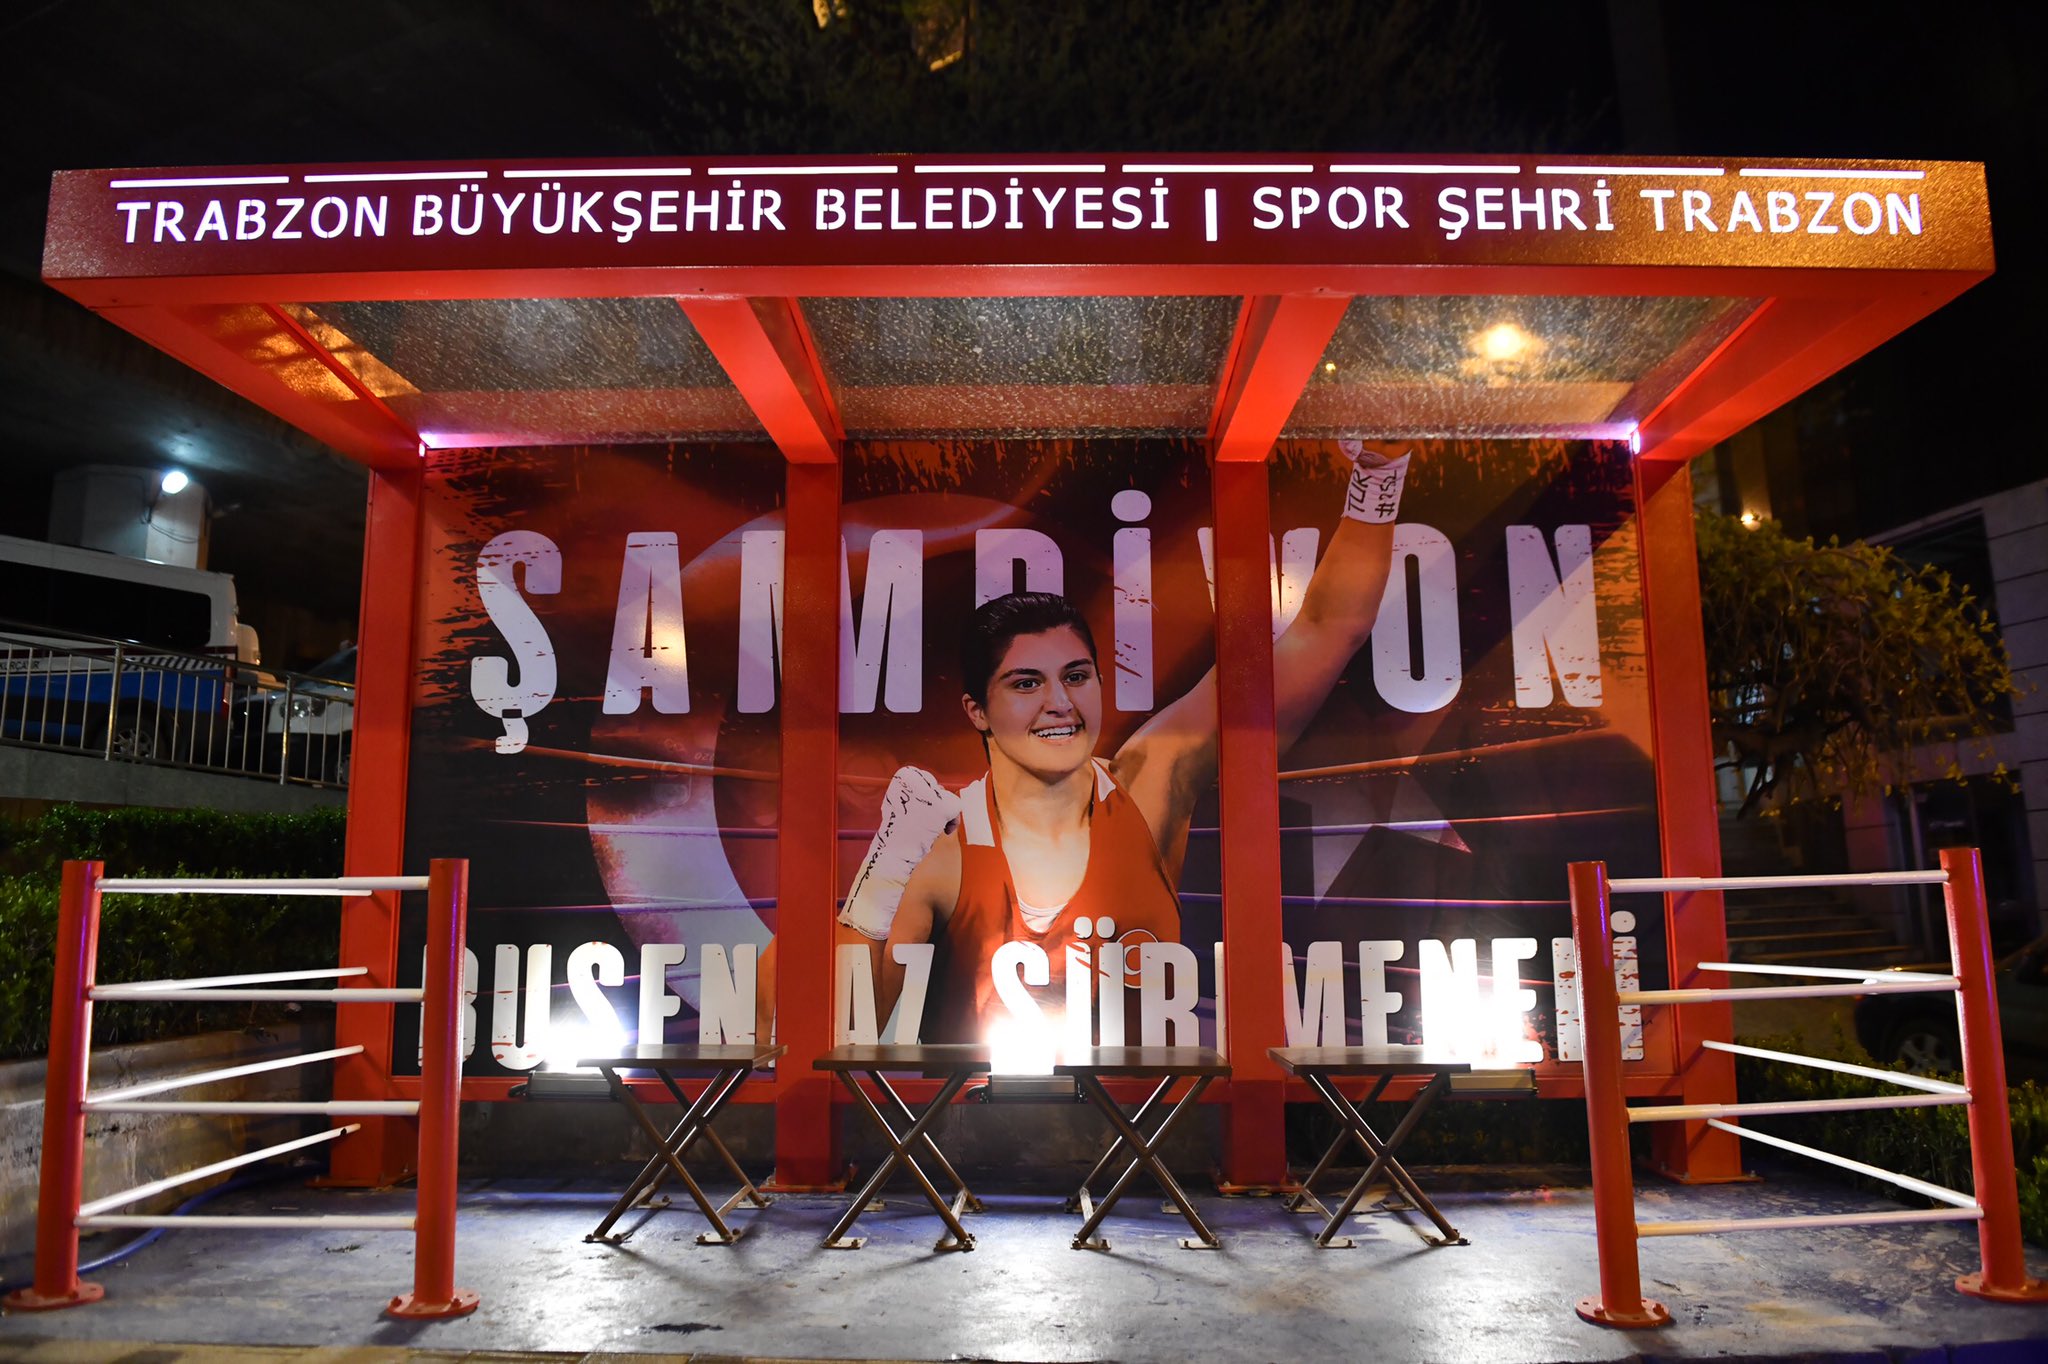 Trabzon Büyükşehir Belediyesinden spor temalı durak çalışması